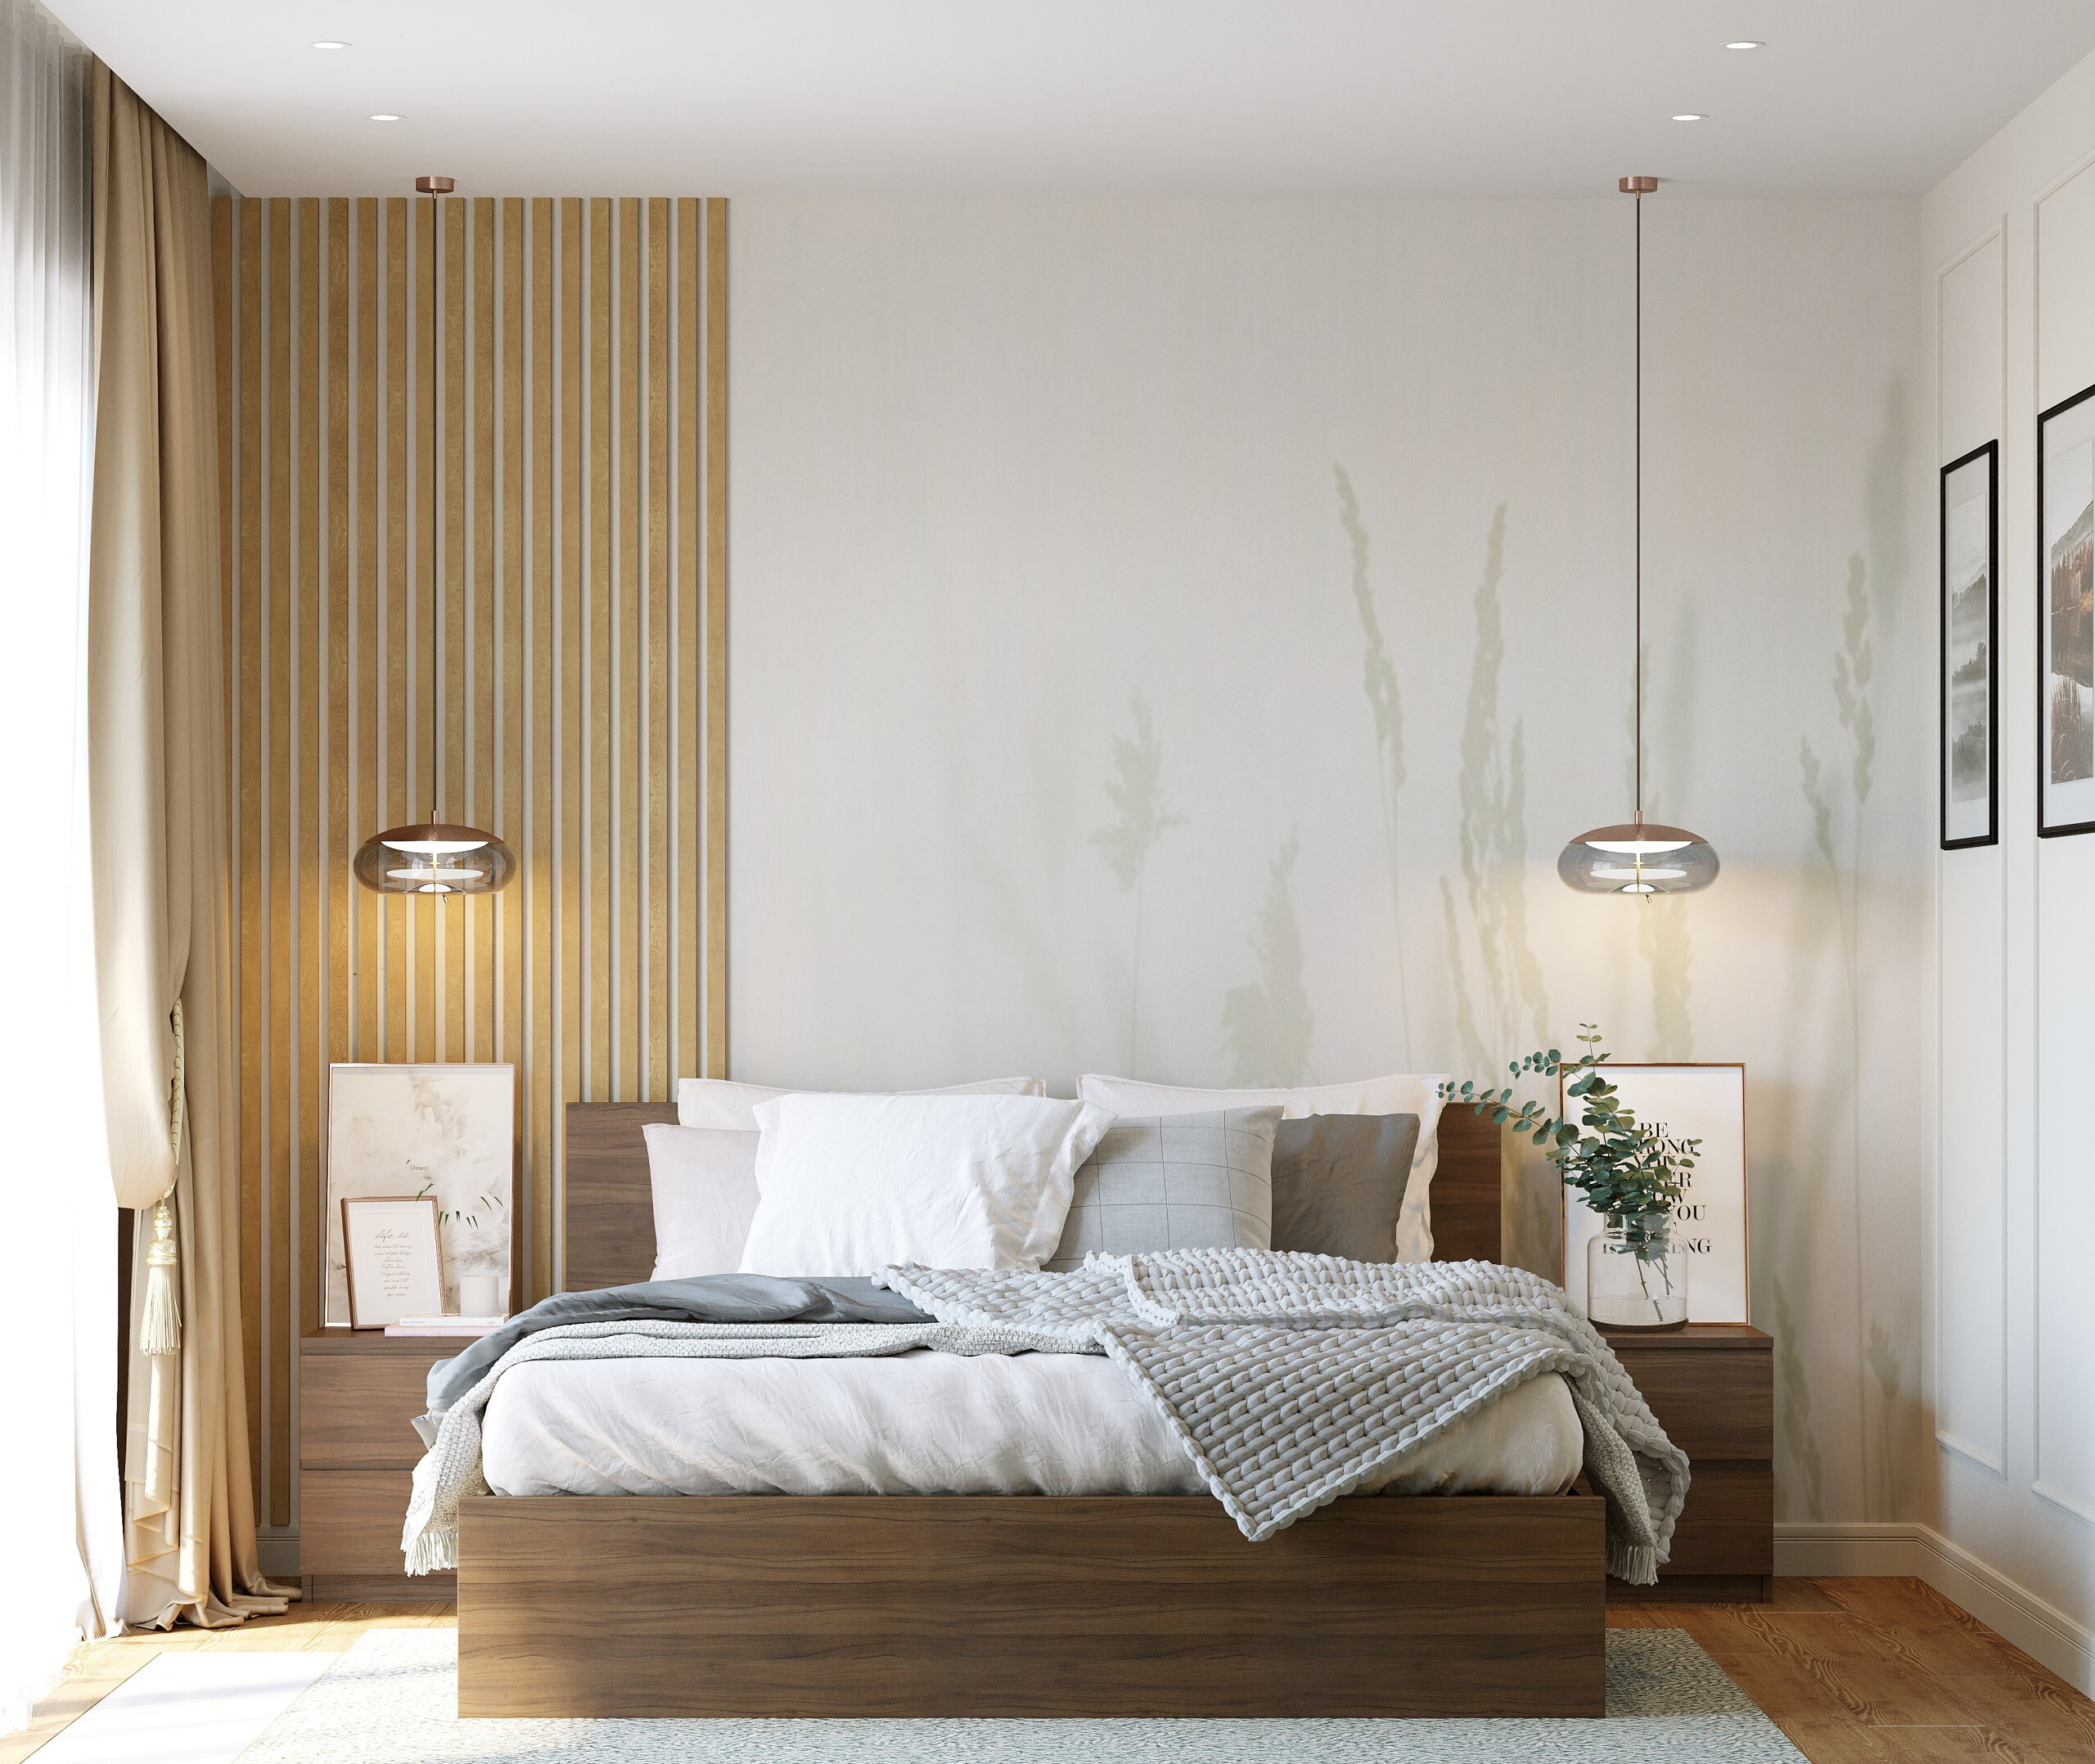 Интерьер спальни cветовыми линиями, рейками с подсветкой, подсветкой настенной, подсветкой светодиодной и светильниками над кроватью в скандинавском стиле